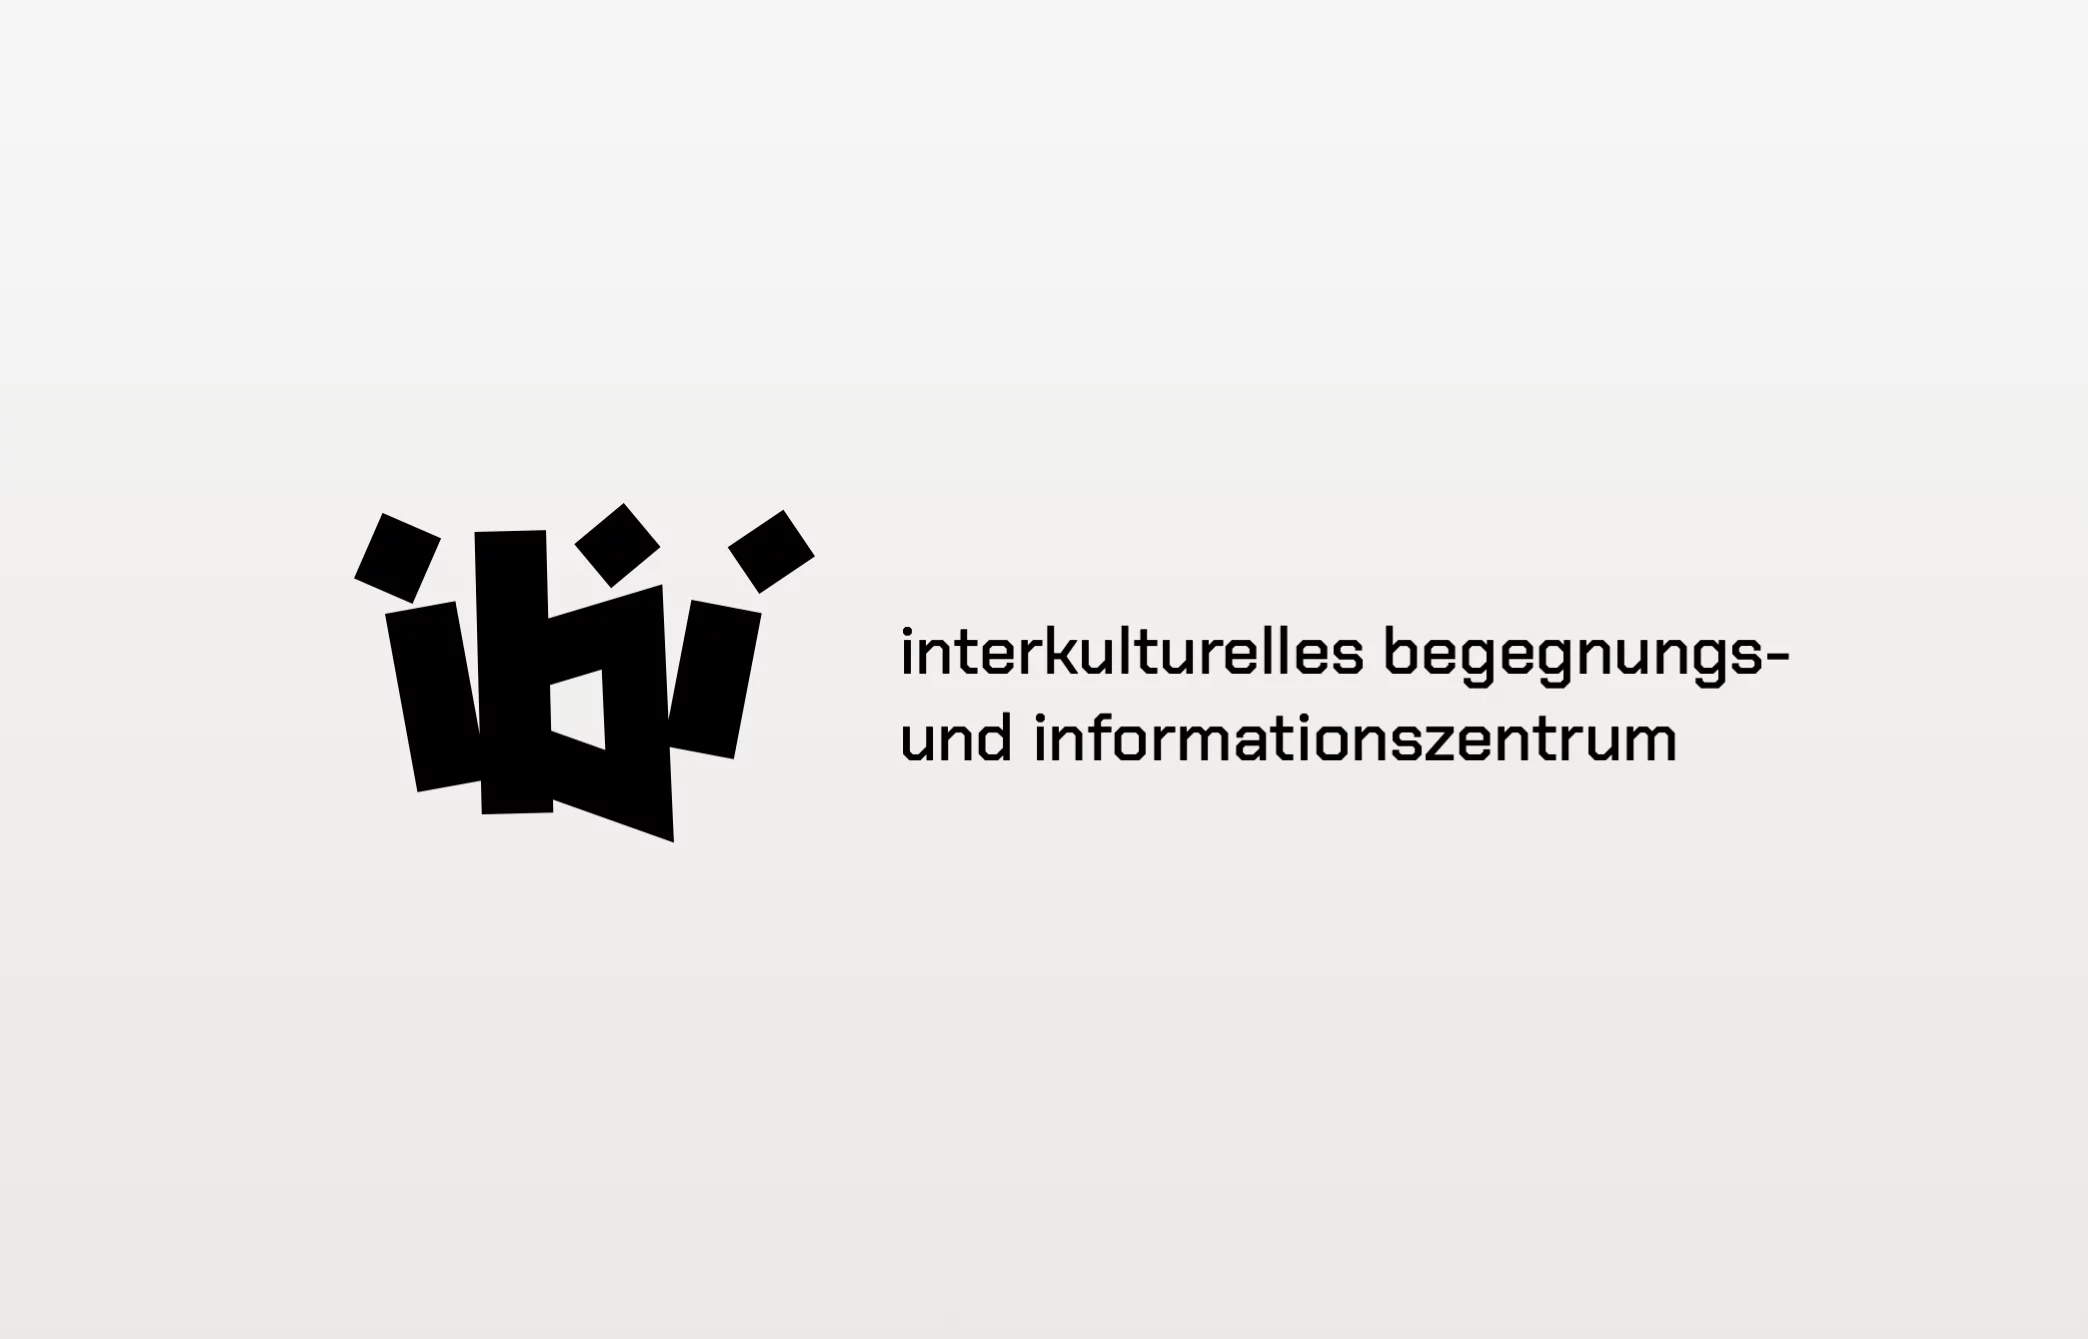 Screen Design - Ideenwettbewerb Interkulturelles Begegnungs- und Informationszentrum